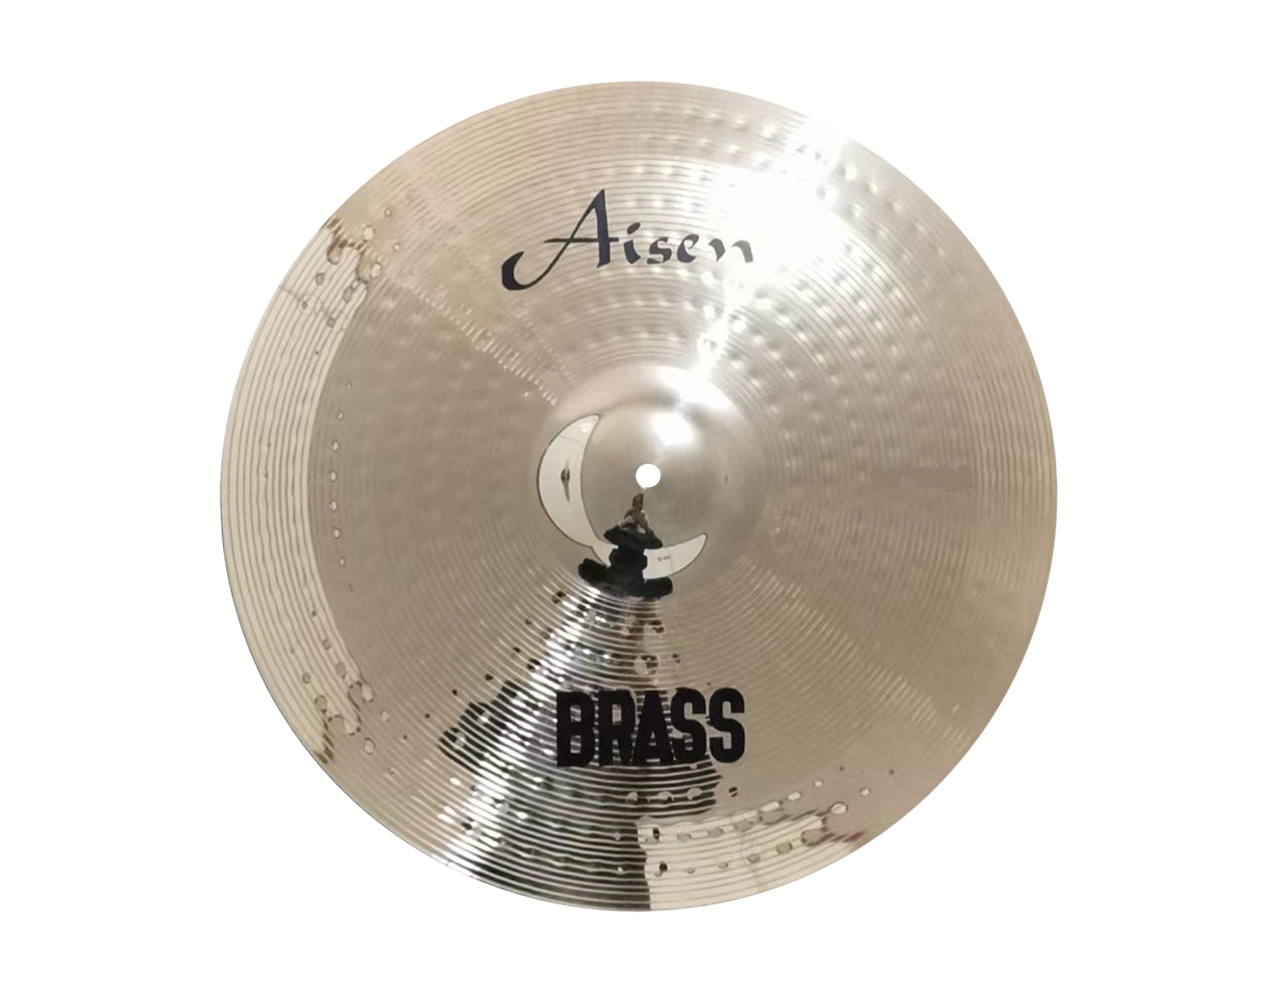 Тарелки, барабаны для ударных установок AISEN BRASS CRASH 16' тарелки барабаны для ударных установок aisen b20 rock cymbal pack 4 шт